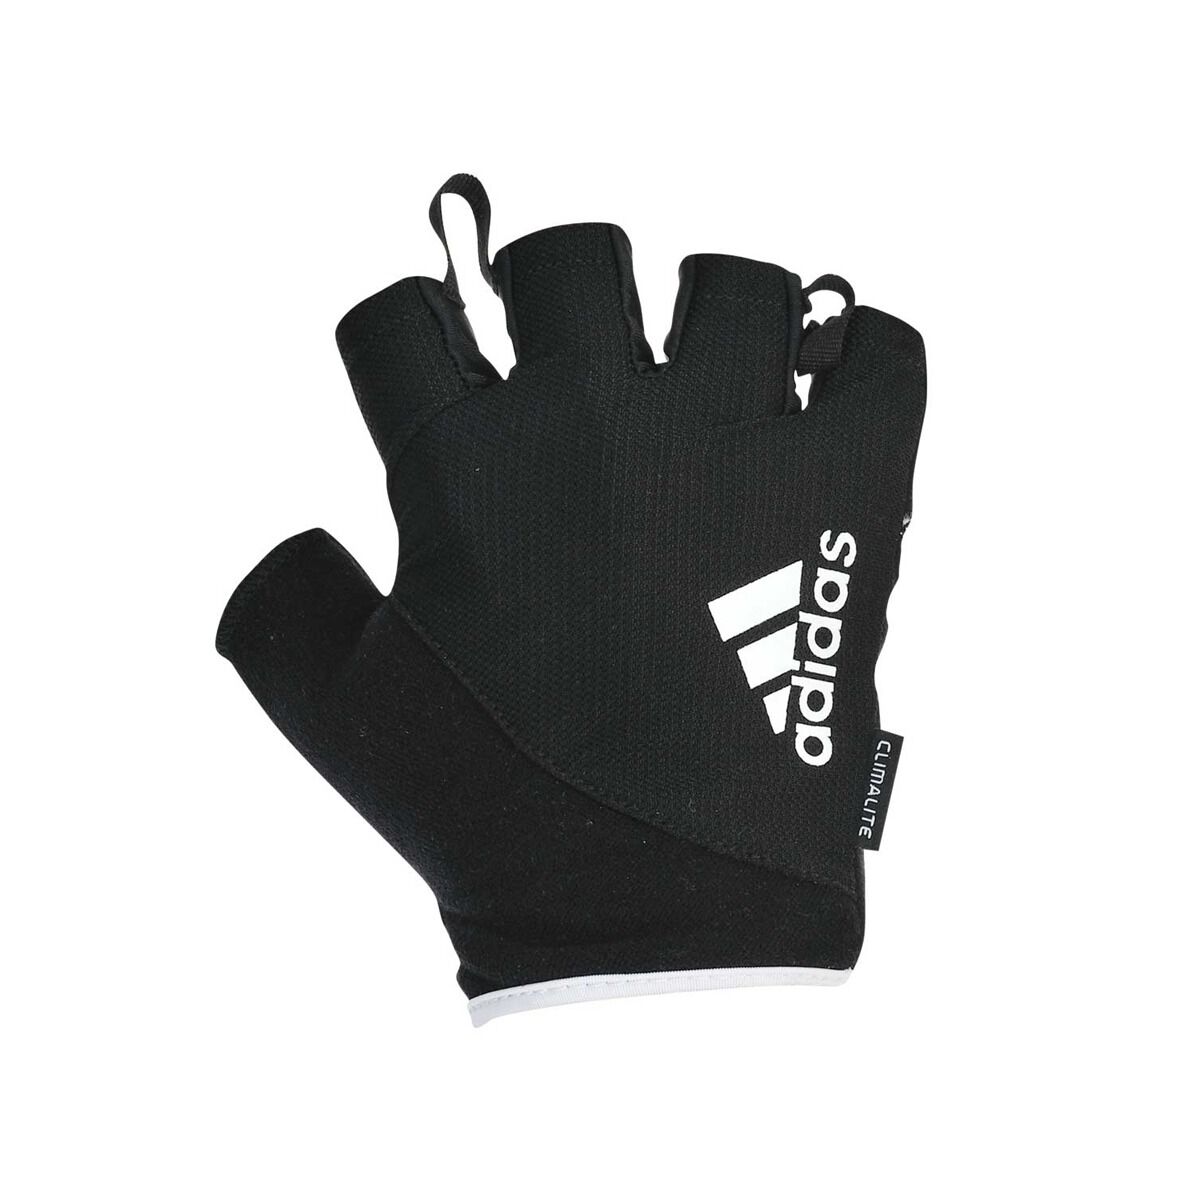 adidas weight gloves